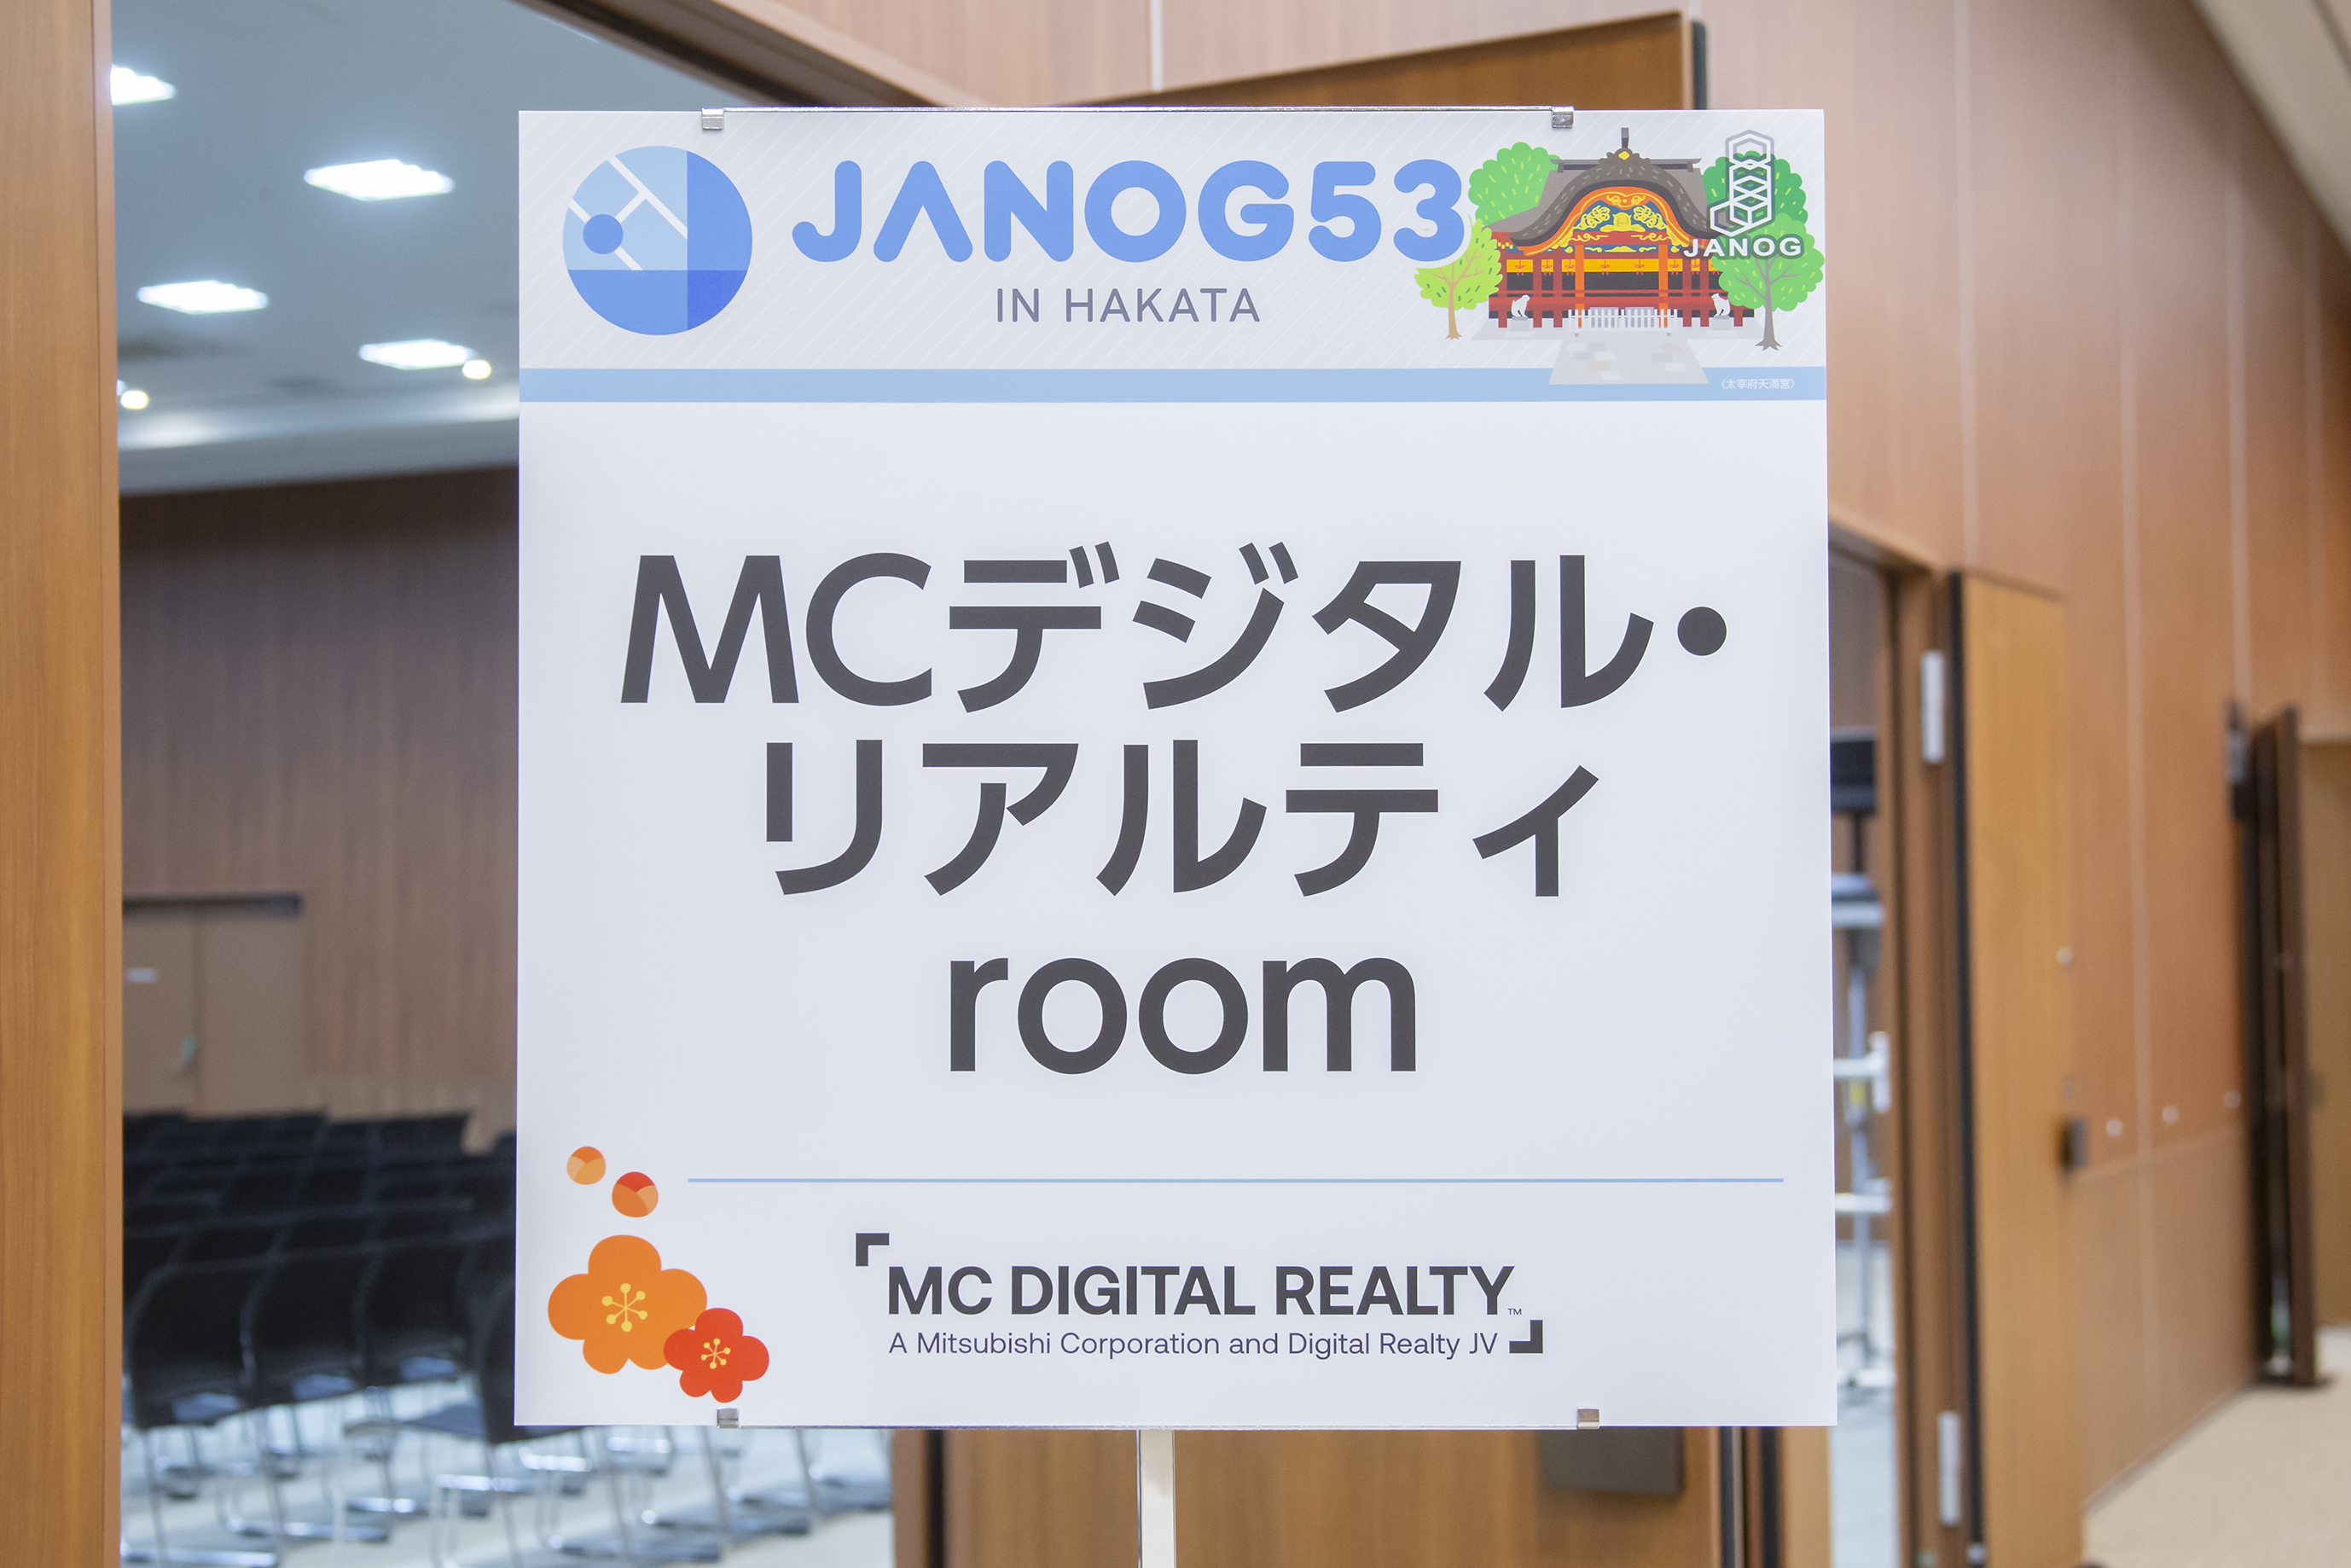 MRデジタル・リアルティ room